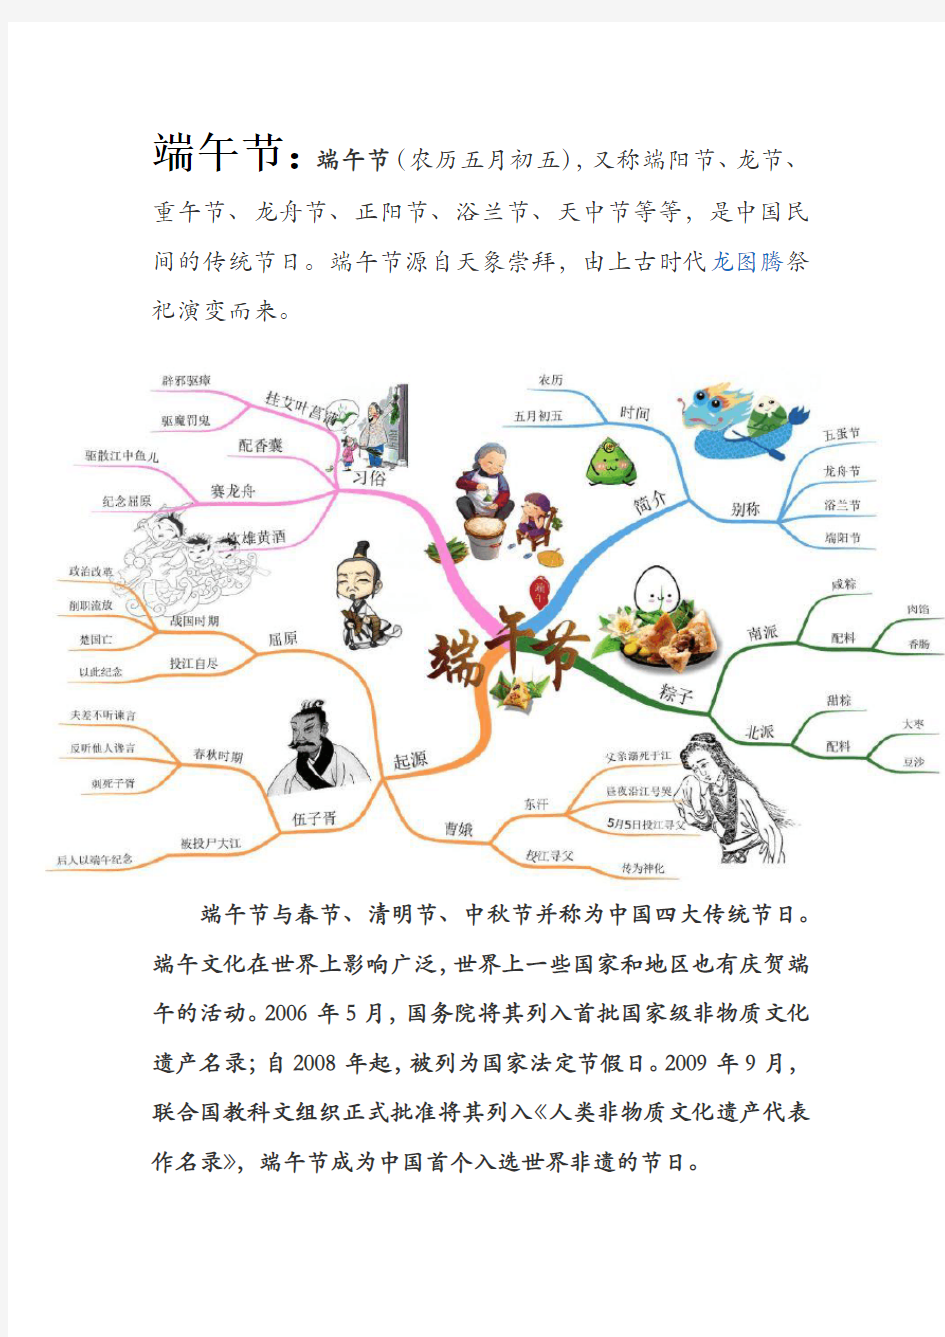 高中文化常识之中国传统四大节日 (最适合初高中学生记忆的思维导图)